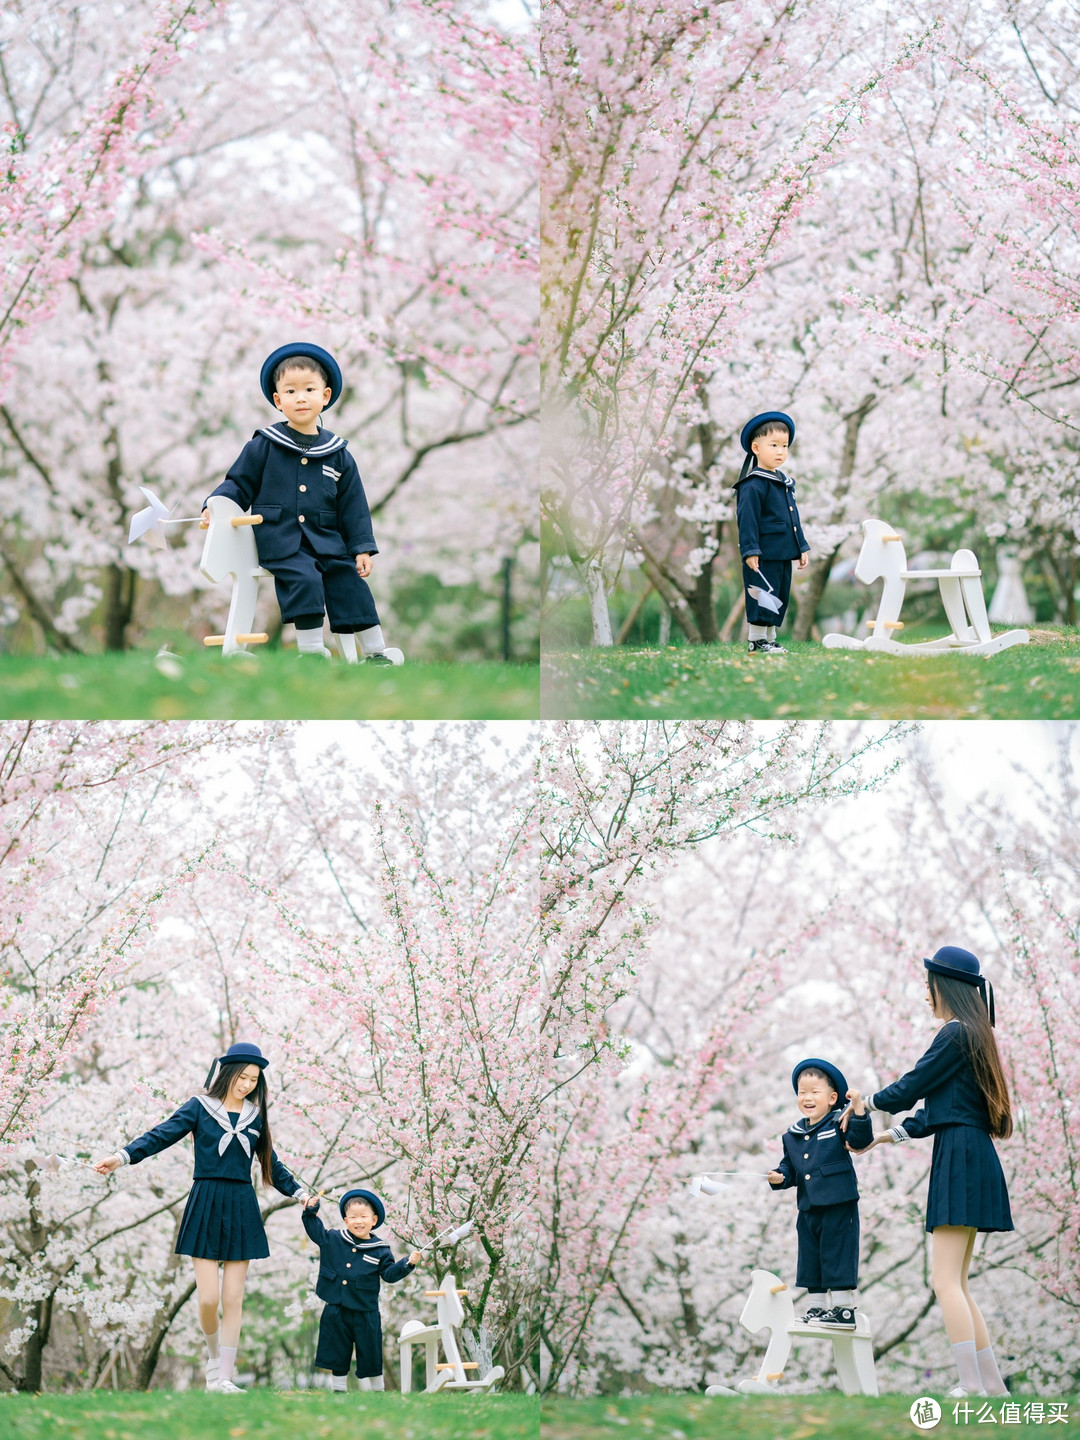 📷拍摄时间：3月20日 📍拍摄地址：嘉兴市南湖区博雅酒店樱花 这里的有个小土坡，到坡上拍可以拍到全是樱花的背景，很适合给宝宝拍樱花照！